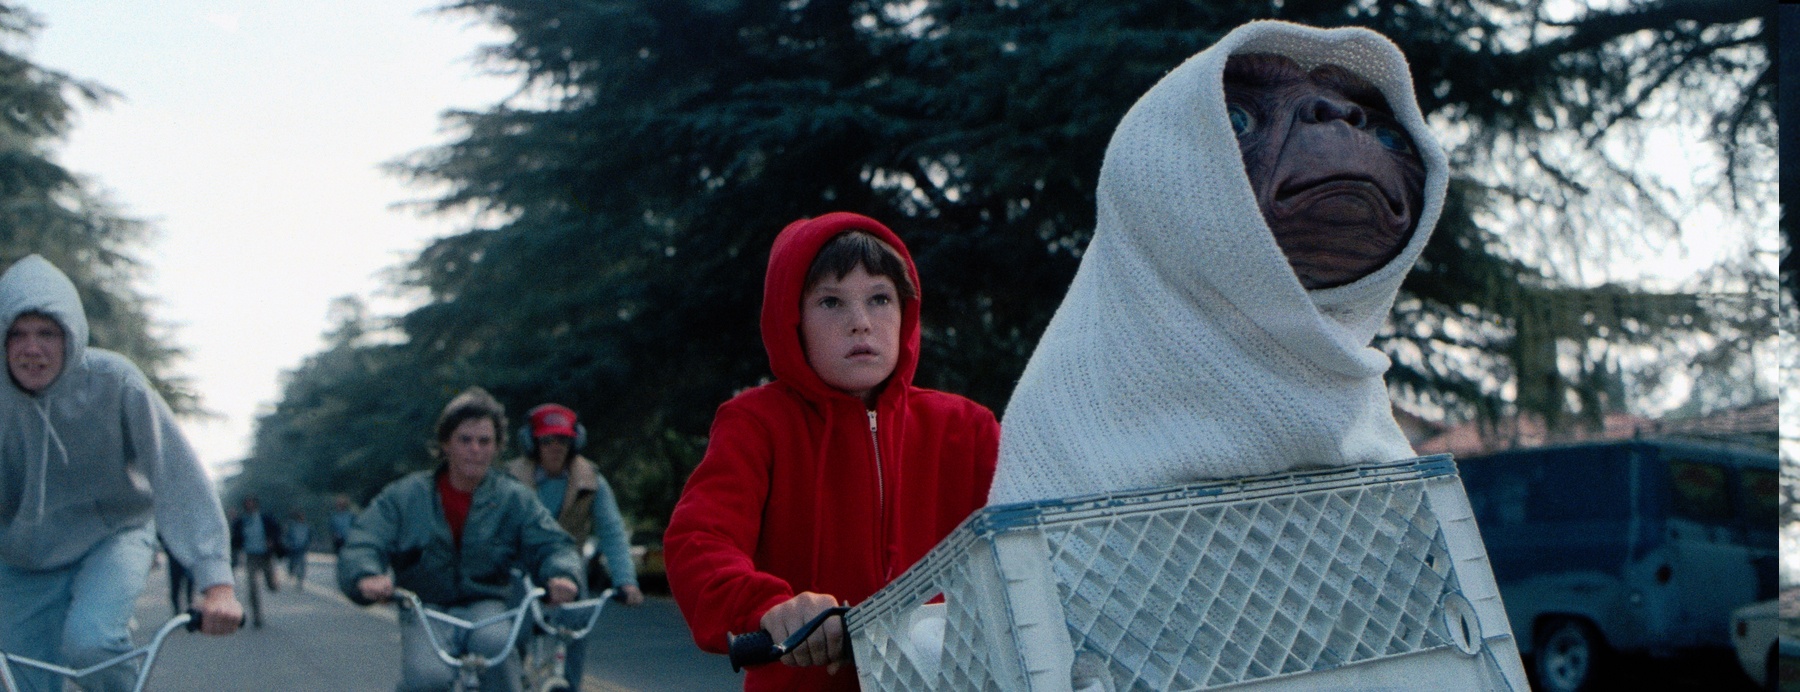 harrison ford had a cameo in E.T.